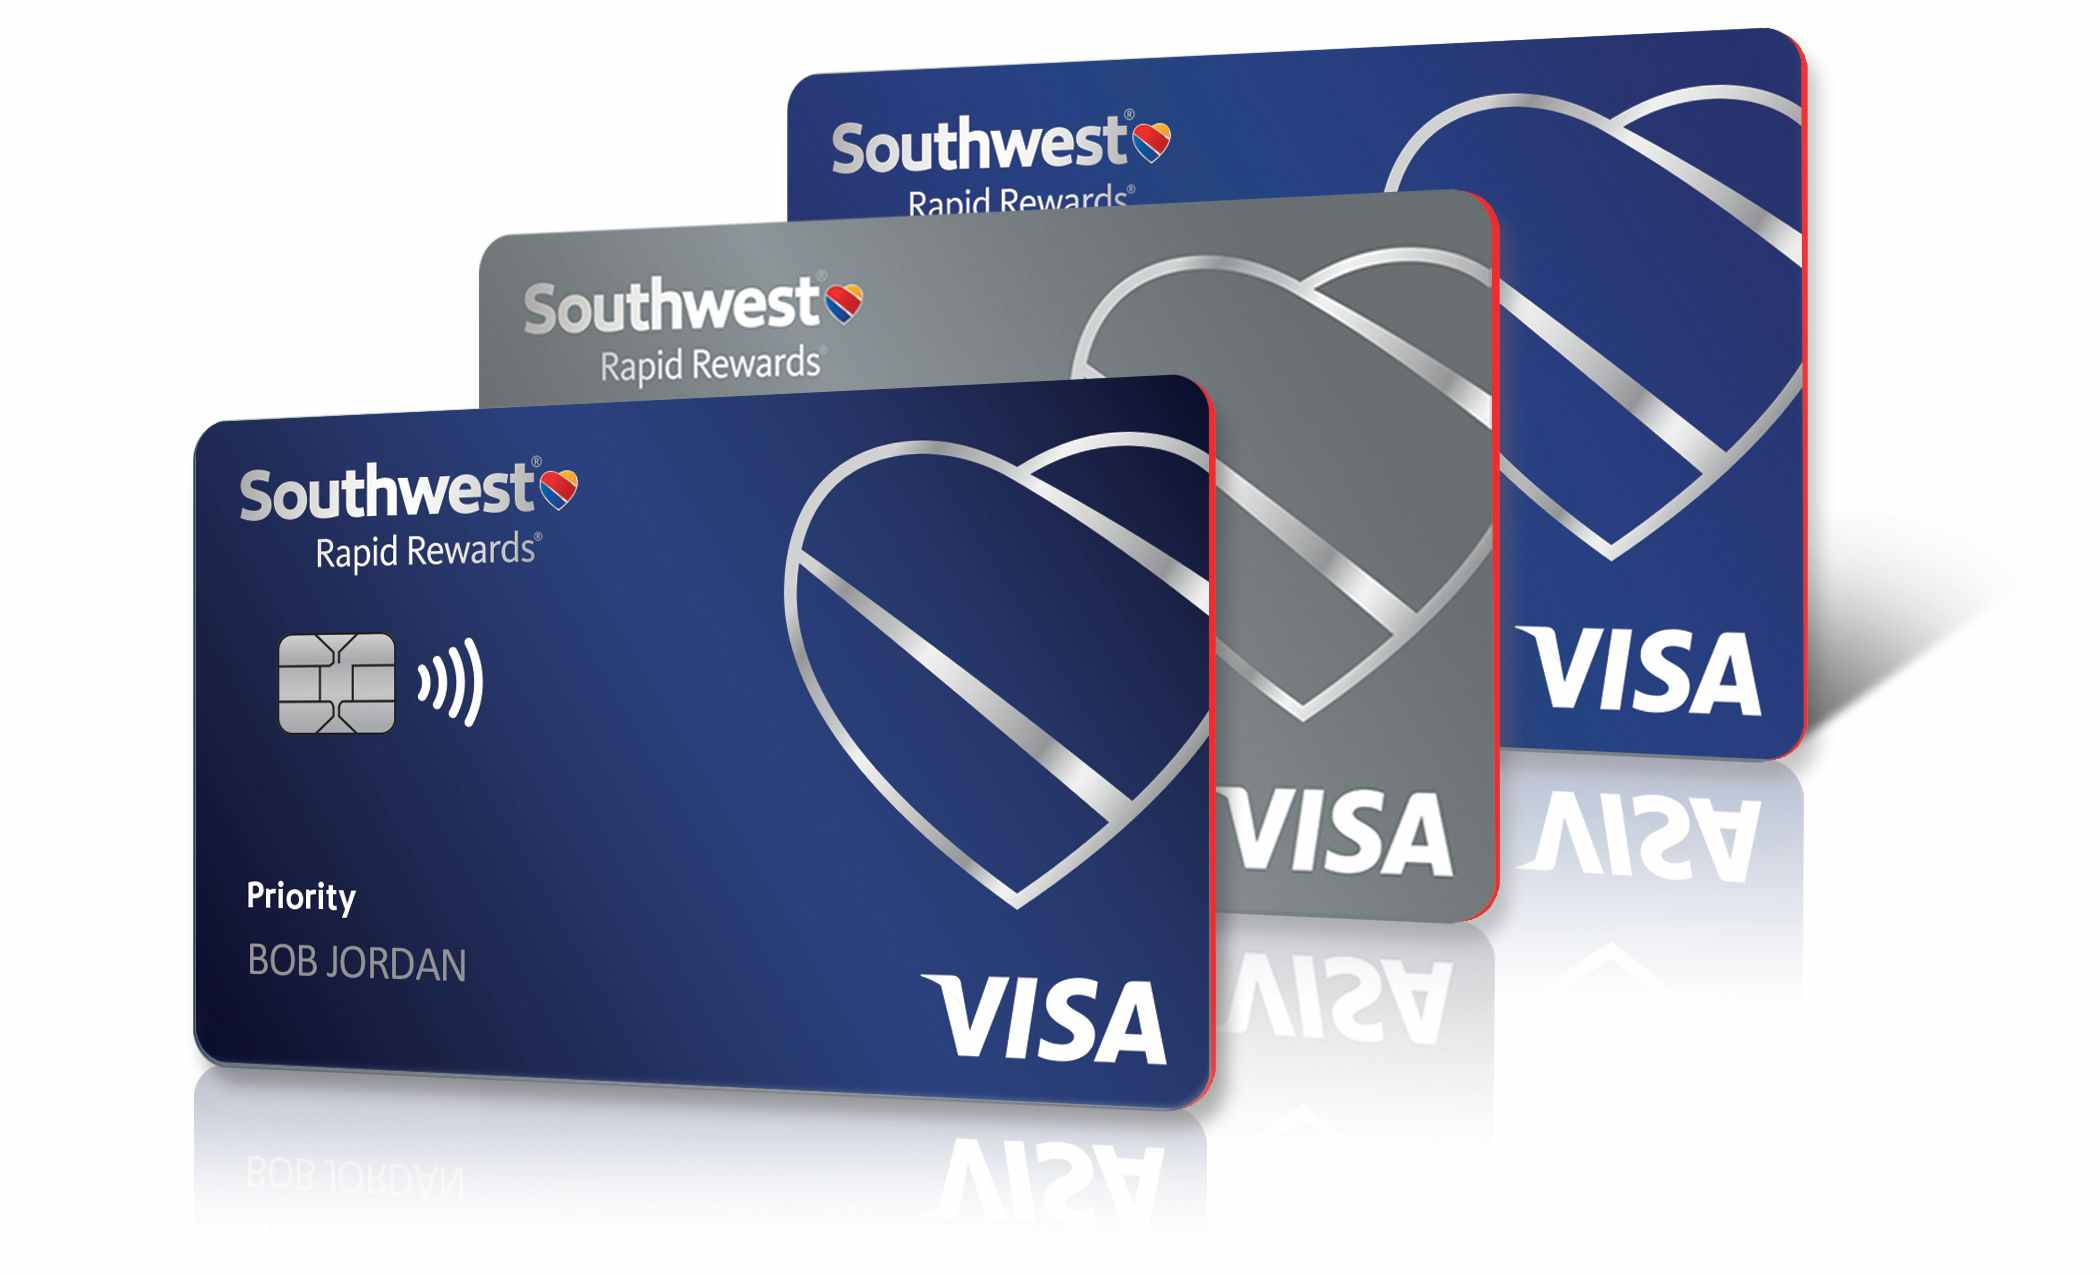 Southwest Airline Rapid Rewards Visa cards